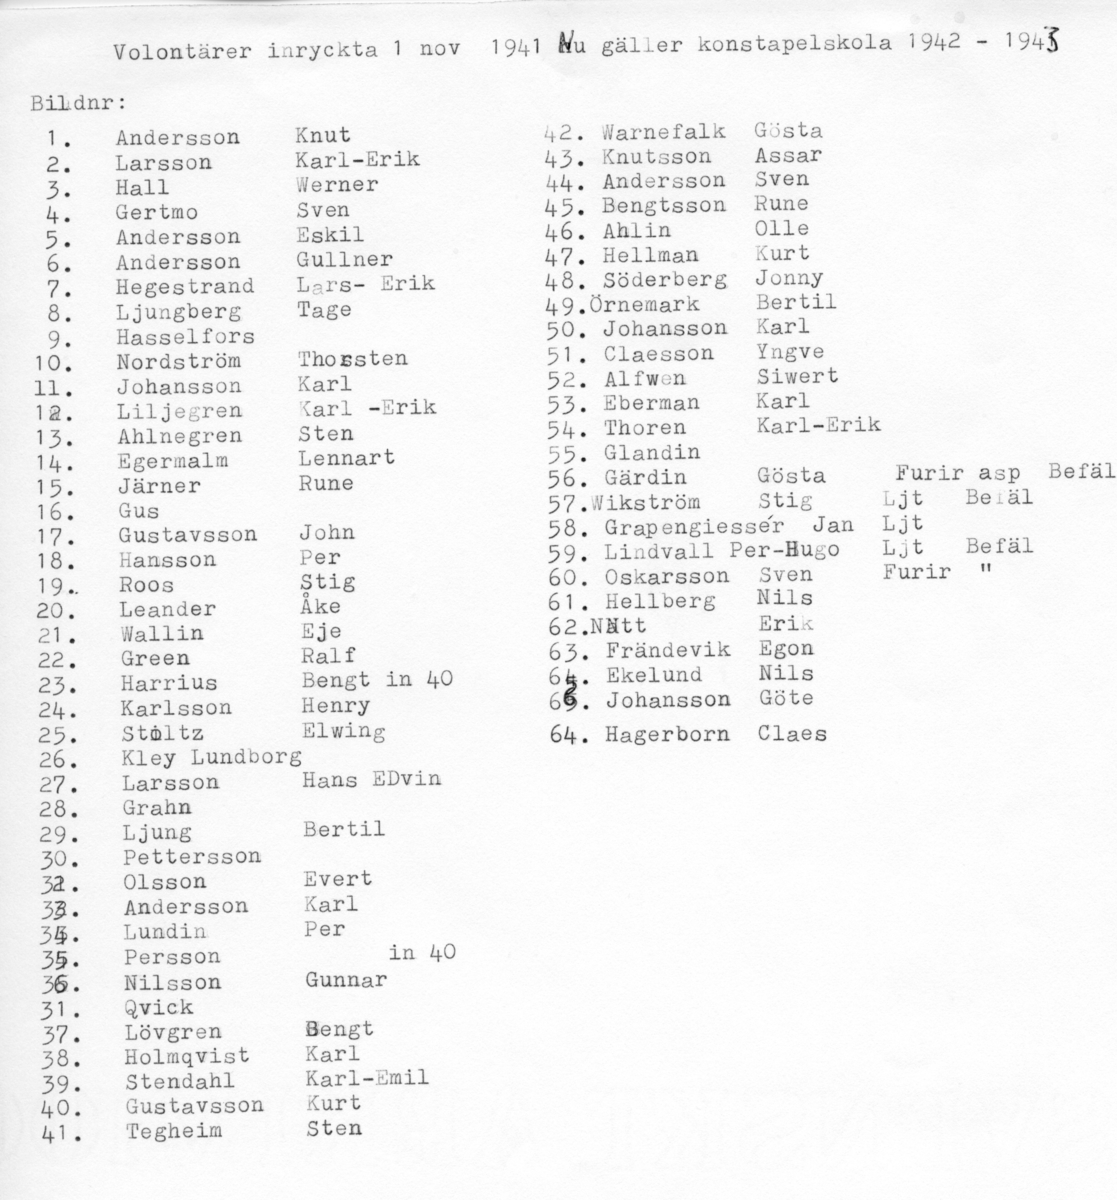 Konstapelskolan, A 6. Volontärer inryckta 1 nov 1941. Se namnlista.